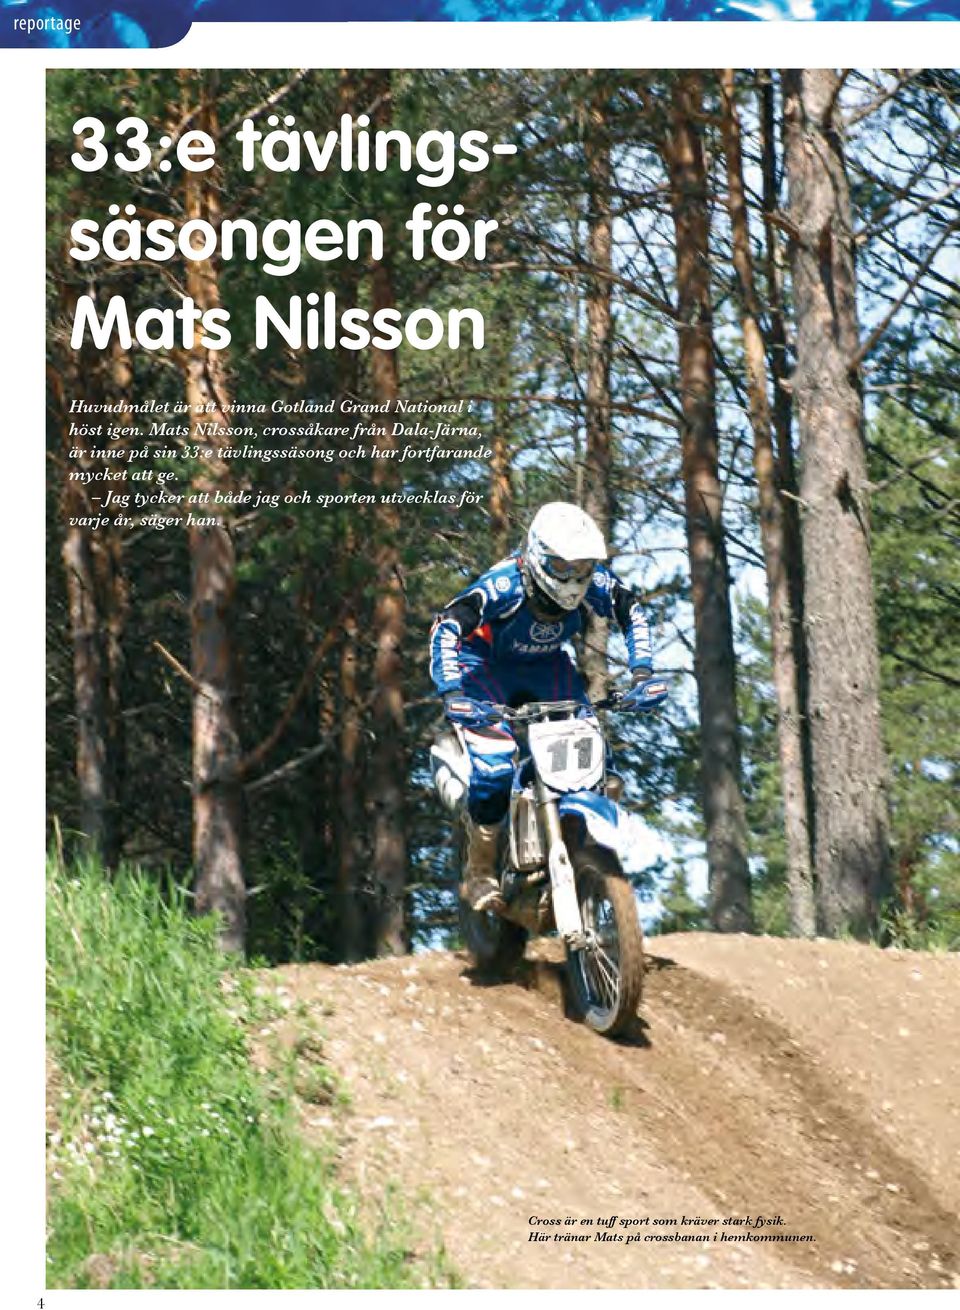 Mats Nilsson, crossåkare från Dala-Järna, är inne på sin 33:e tävlingssäsong och har fortfarande